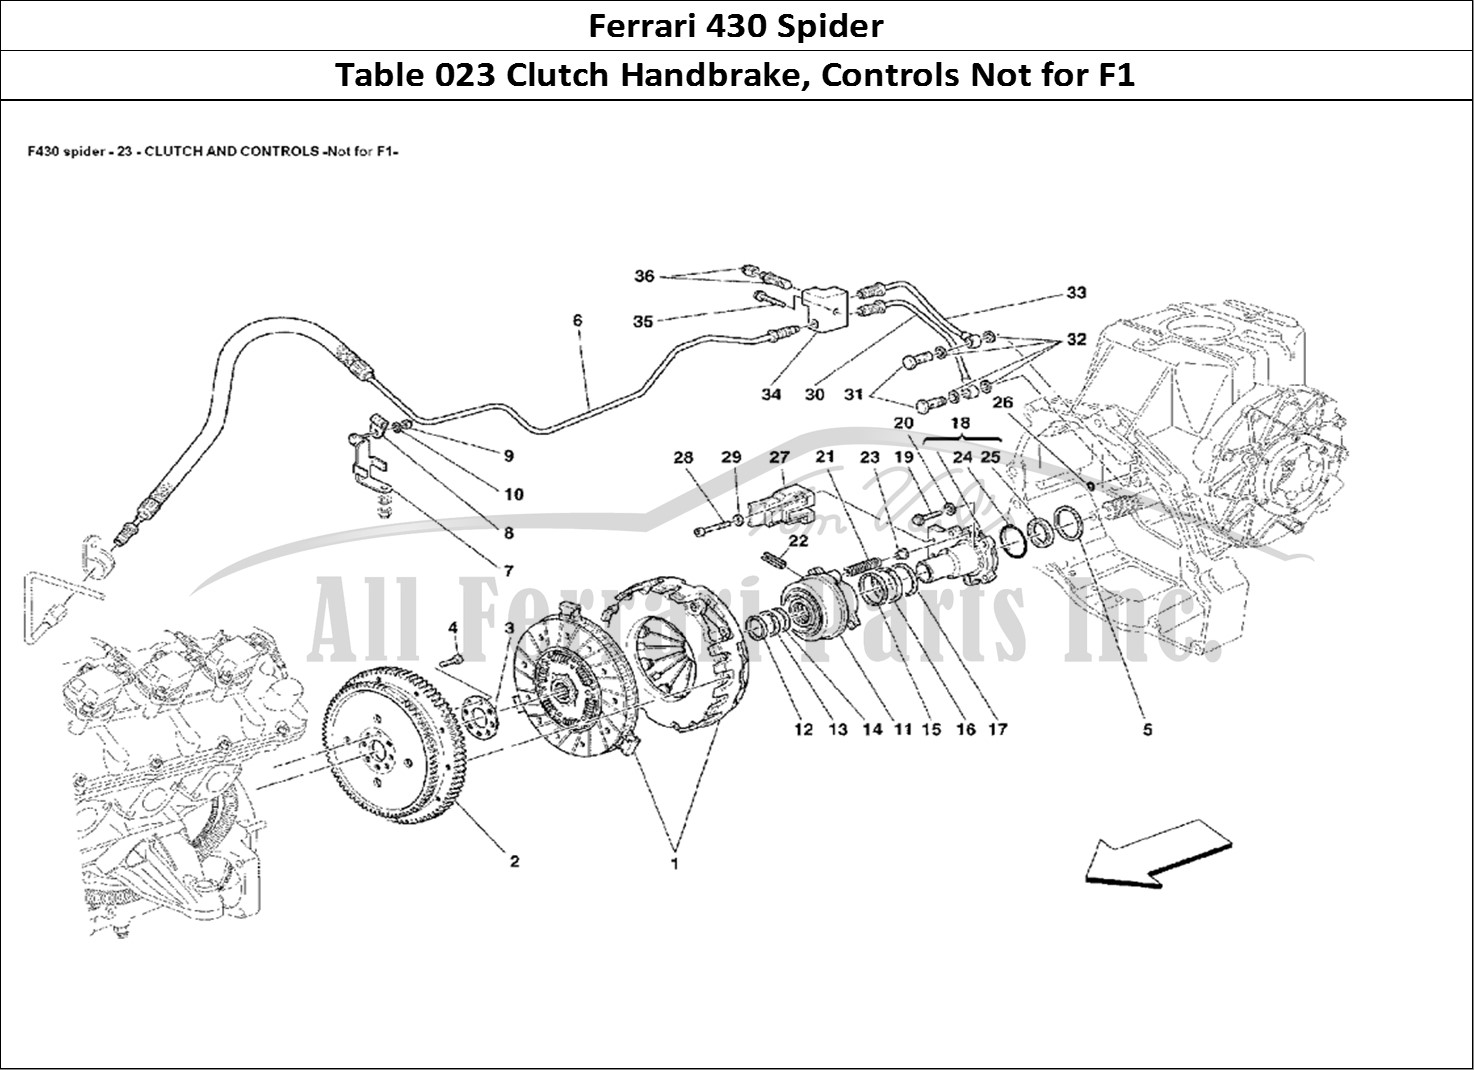 Ferrari Parts Ferrari 430 Spider Page 023 Clutch and Controls -Not